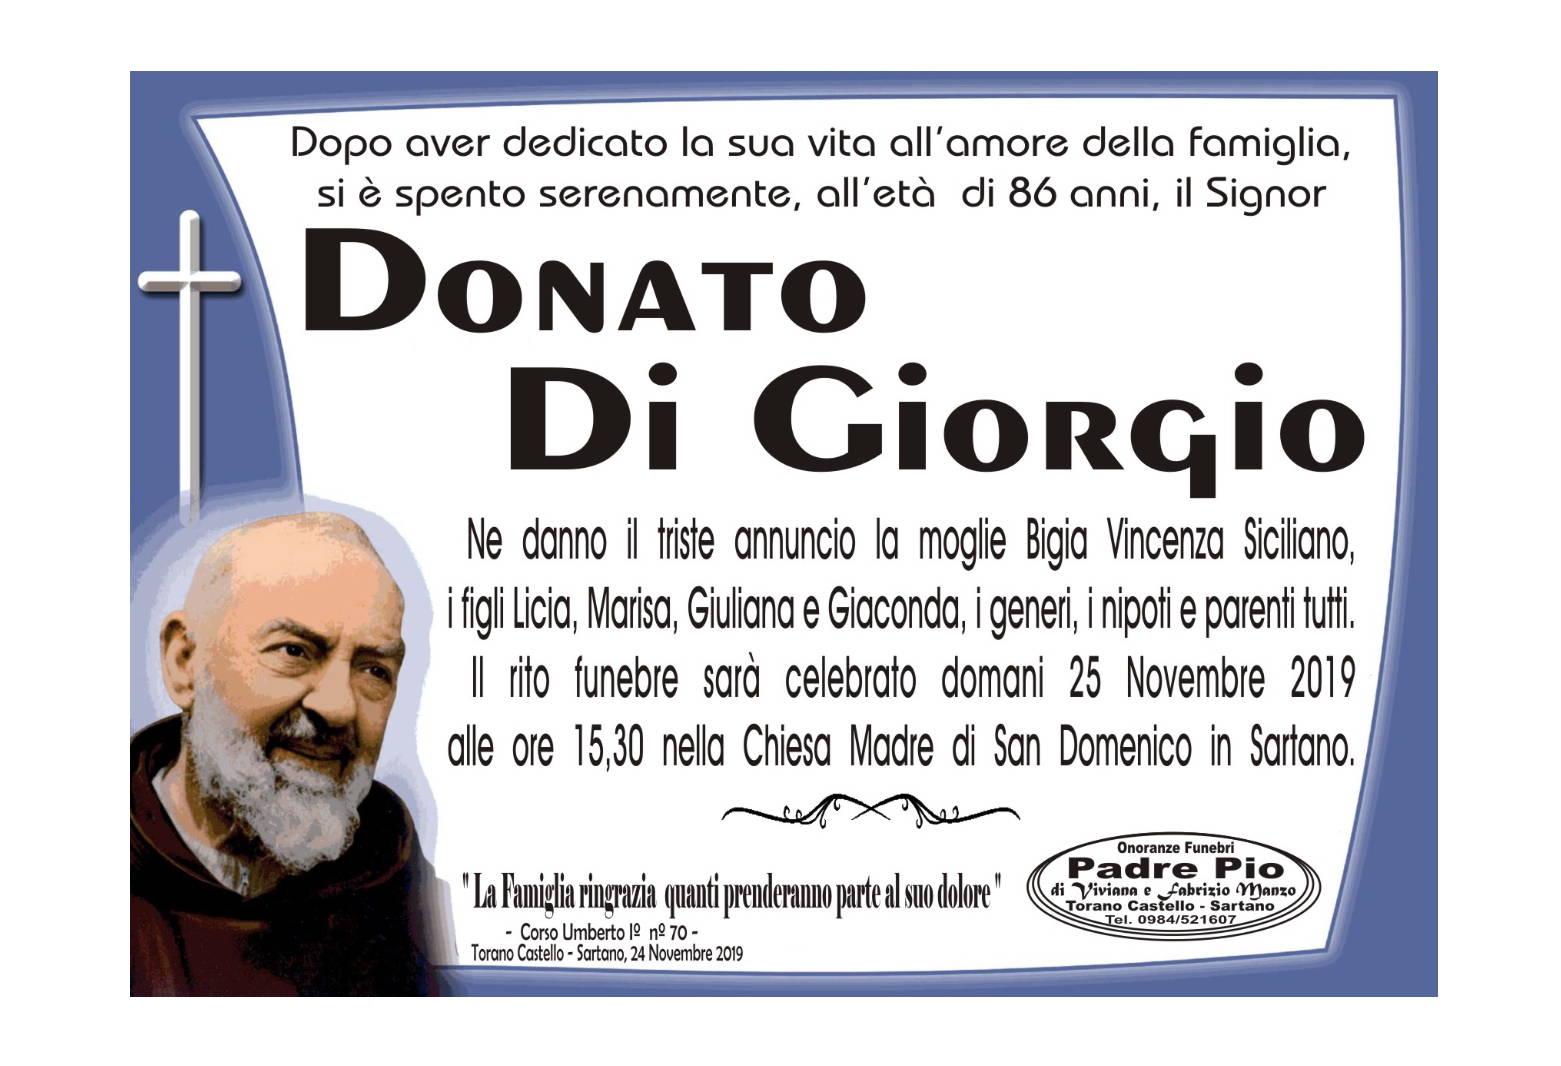 Donato Di Giorgio